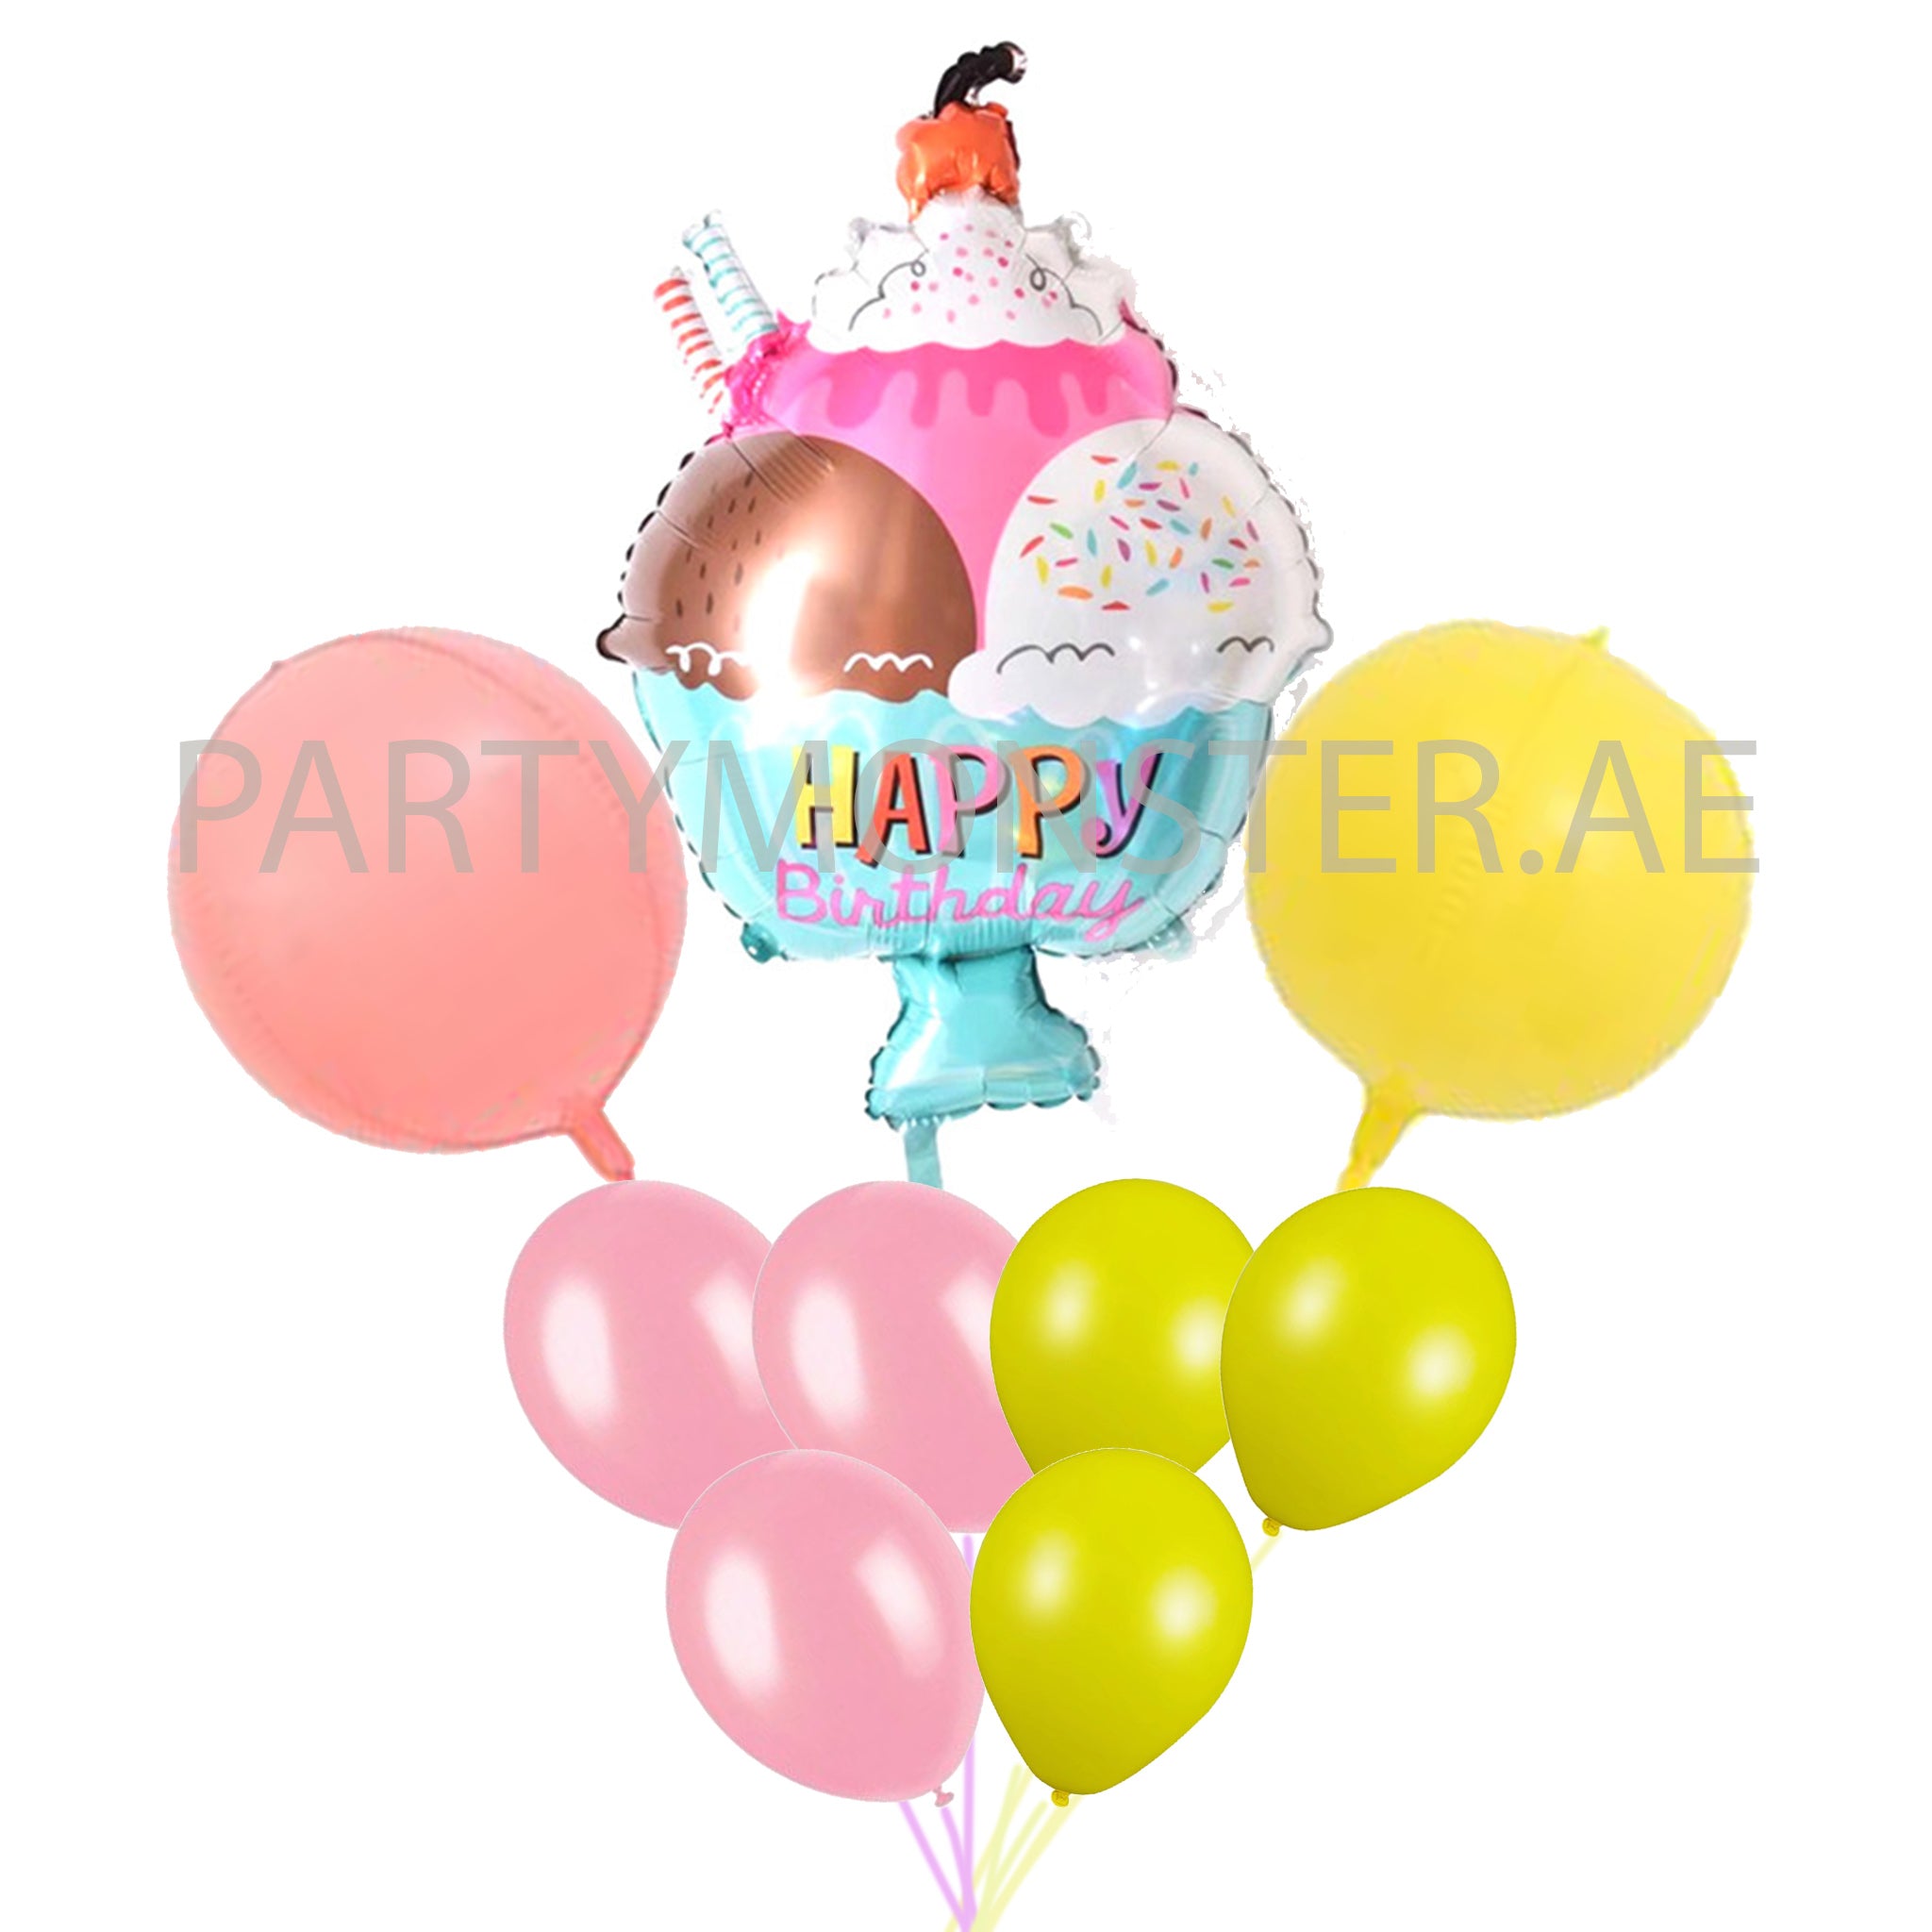 Happy birthday ice cream balloons bouquet - PartyMonster.ae